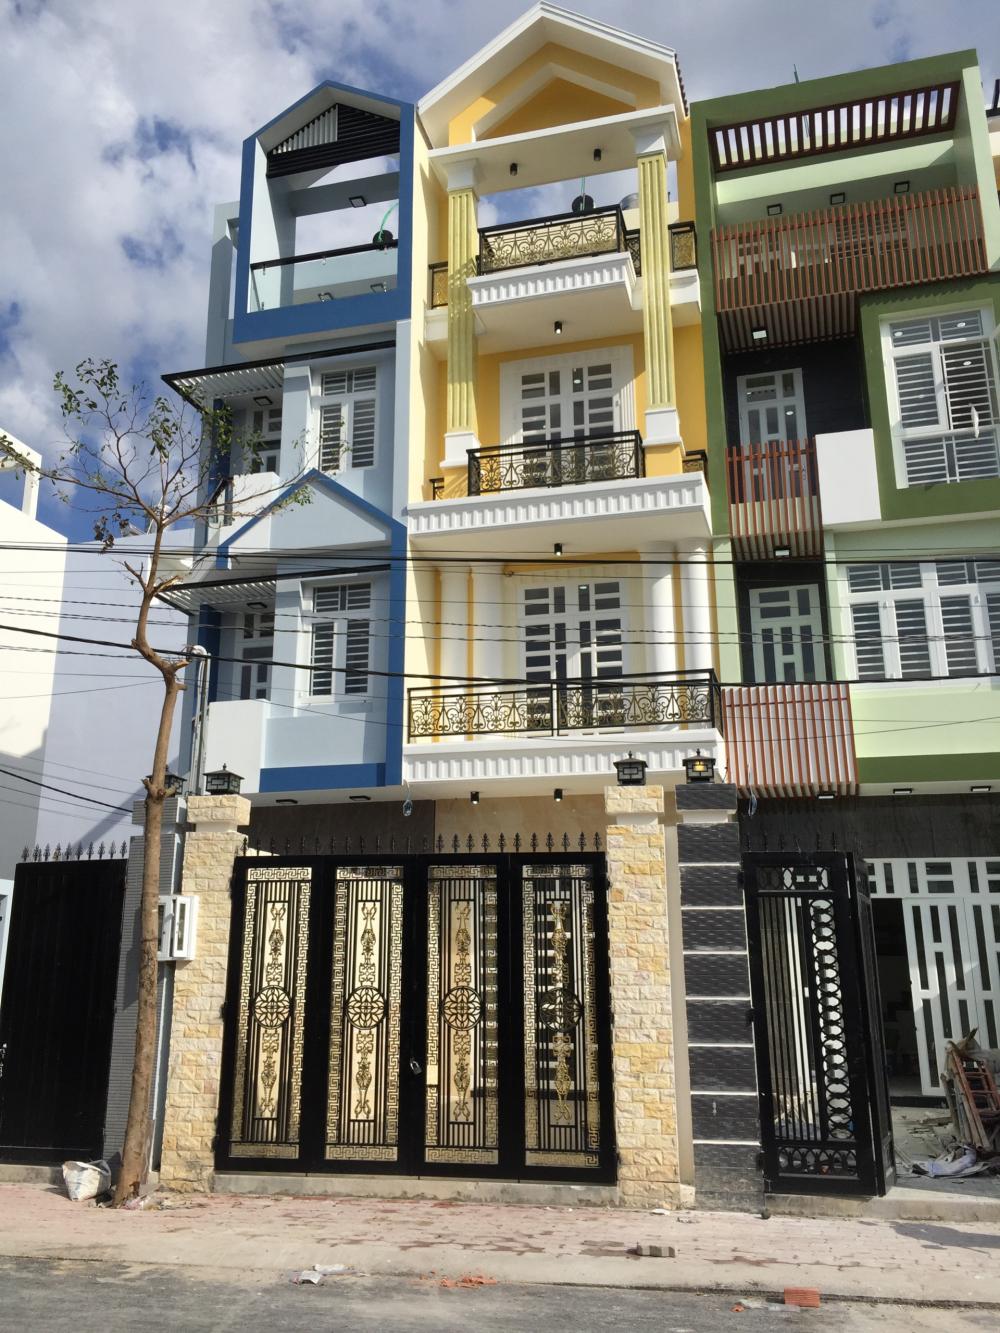 Bán nhà gần Phạm Văn Đồng, MT đường 26 mới nội thất, 1 trệt, 3 lầu, giá 3 tỷ